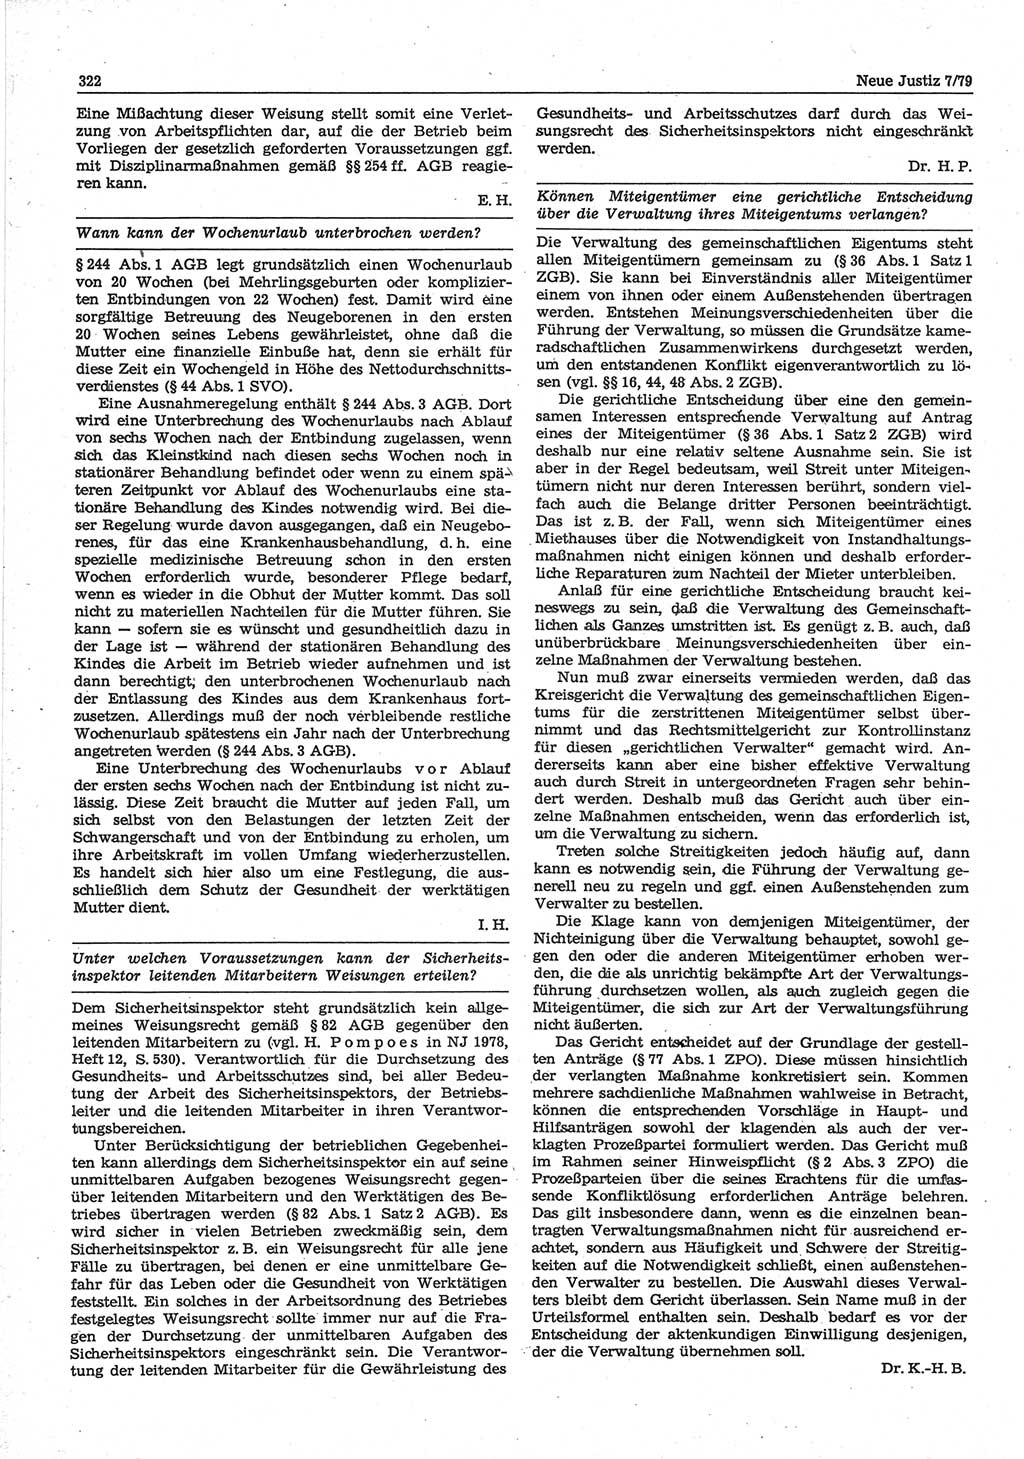 Neue Justiz (NJ), Zeitschrift für sozialistisches Recht und Gesetzlichkeit [Deutsche Demokratische Republik (DDR)], 33. Jahrgang 1979, Seite 322 (NJ DDR 1979, S. 322)